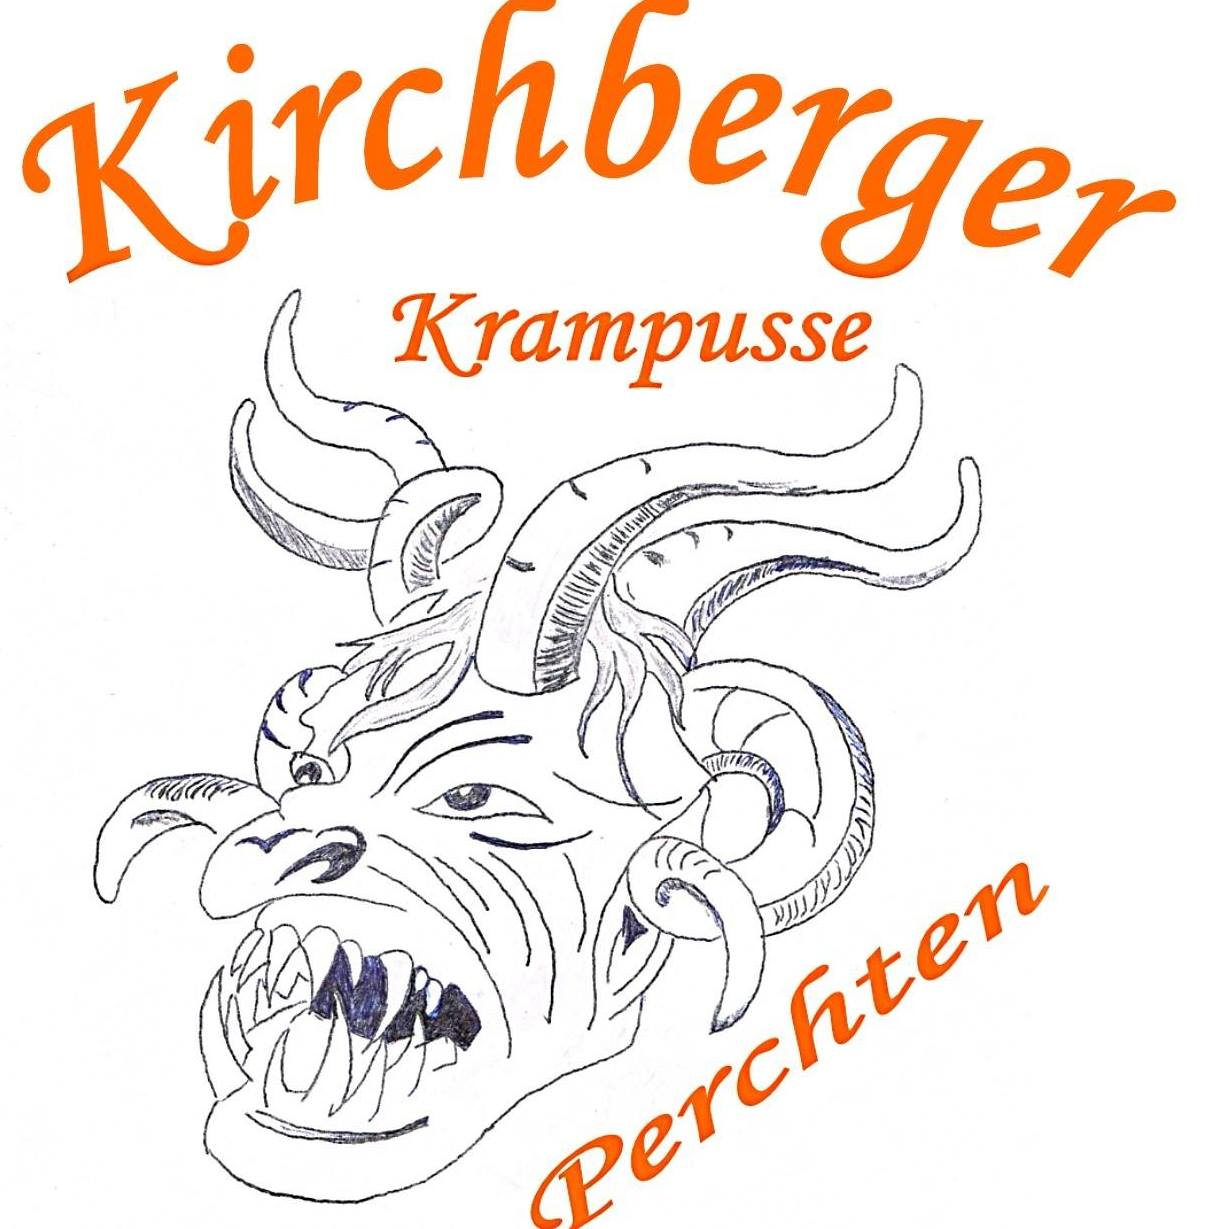 Kirchberger Krampusse & Perchten Kirchberg